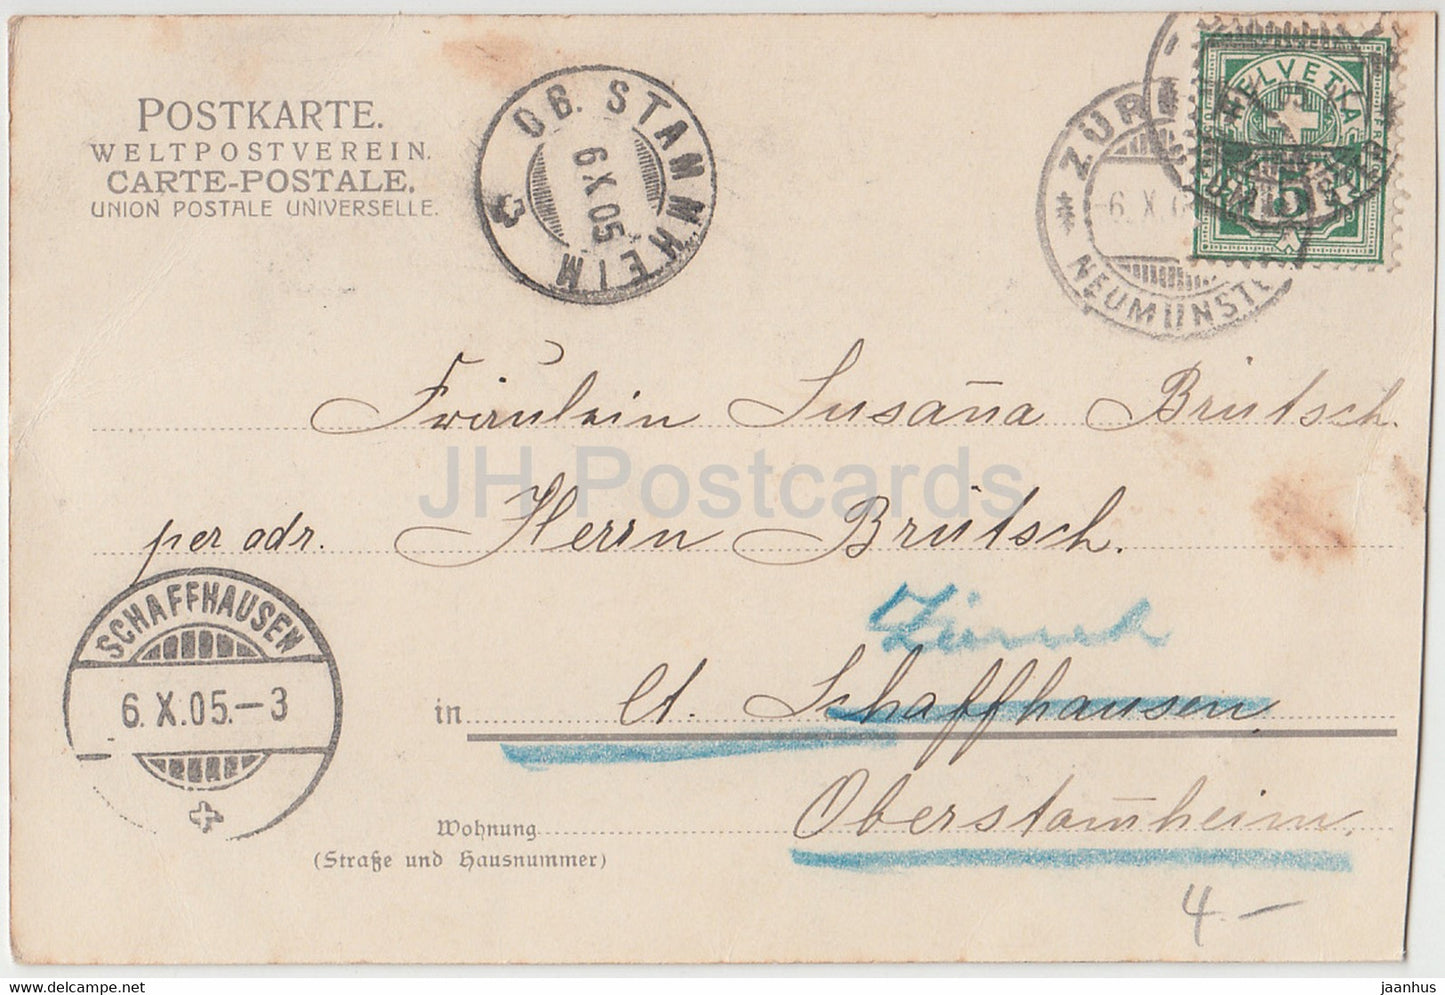 Gemälde von Ludwig Richter – Sommerlust – Deutsche Kunst – alte Postkarte – 1905 – Deutschland – gebraucht